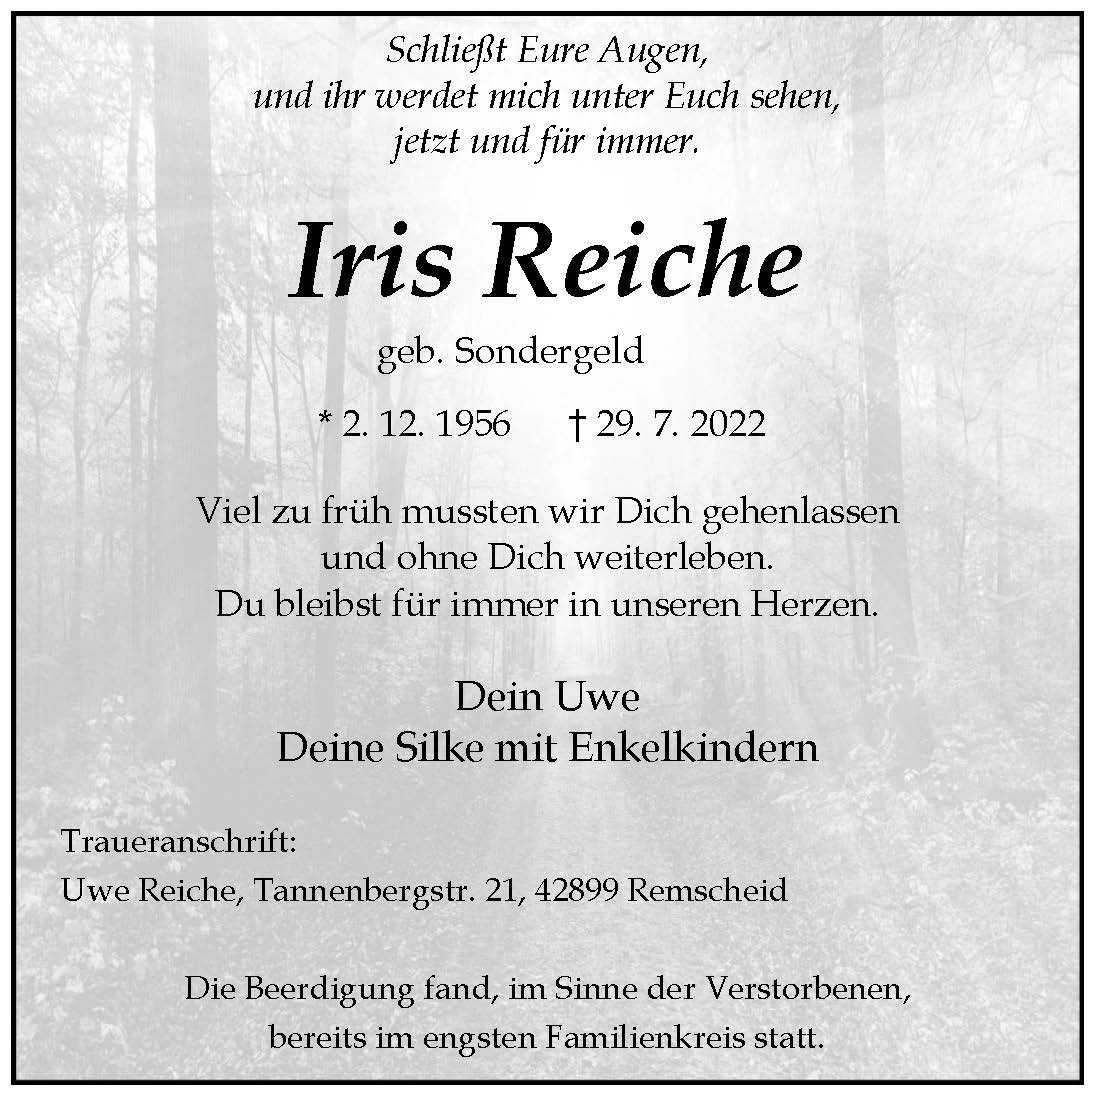 Iris Reiche